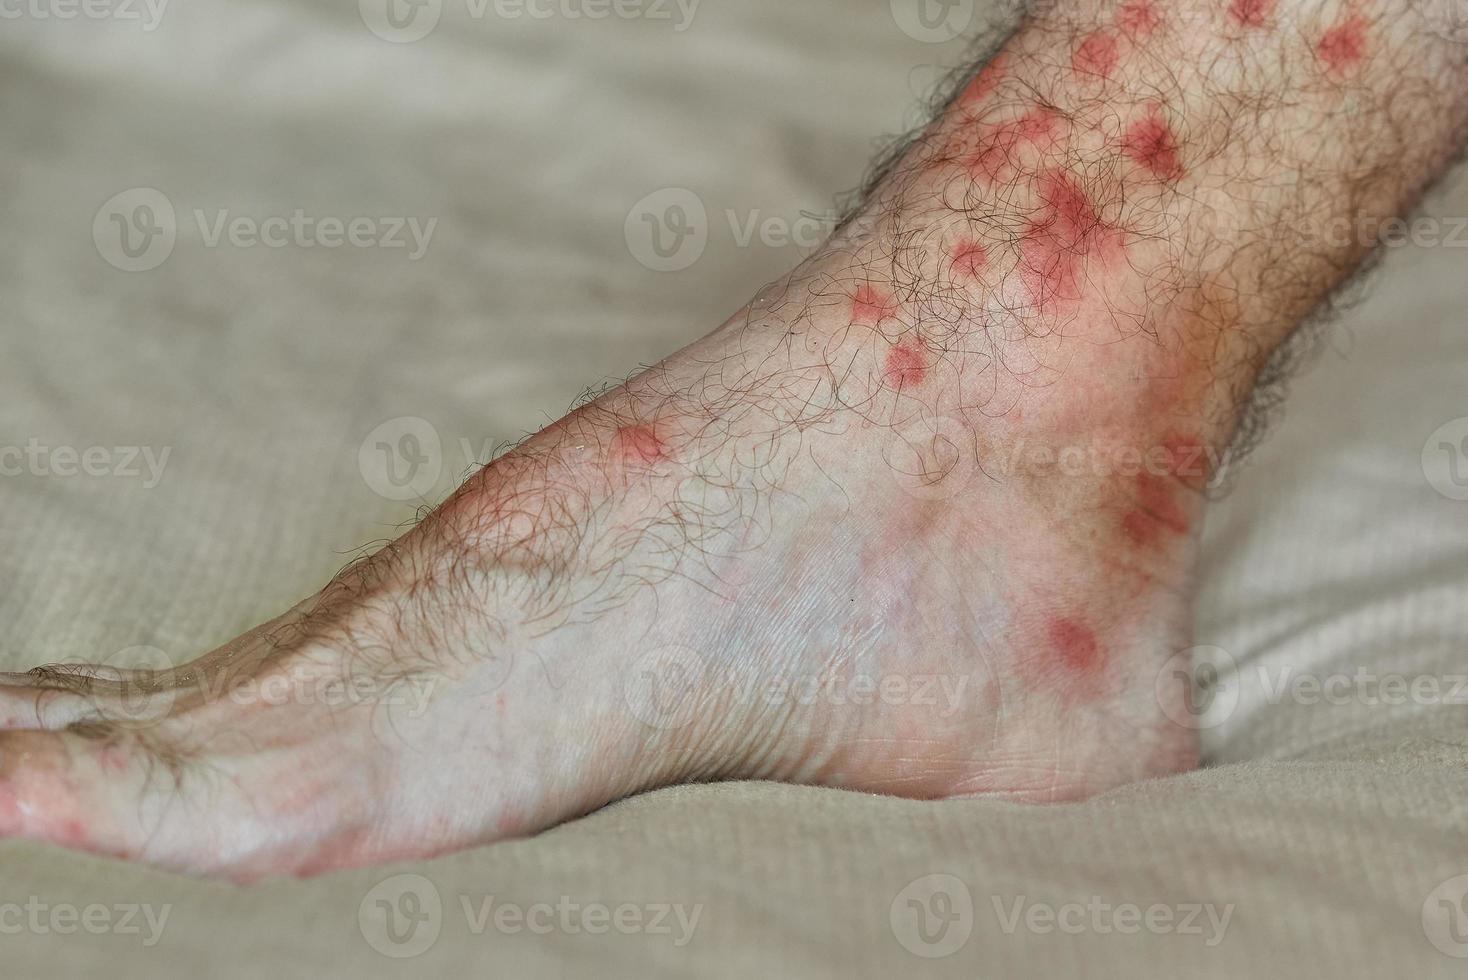 manchas vermelhas na pele. perna masculina com muitas manchas vermelhas e cicatriz de picada de inseto. foto